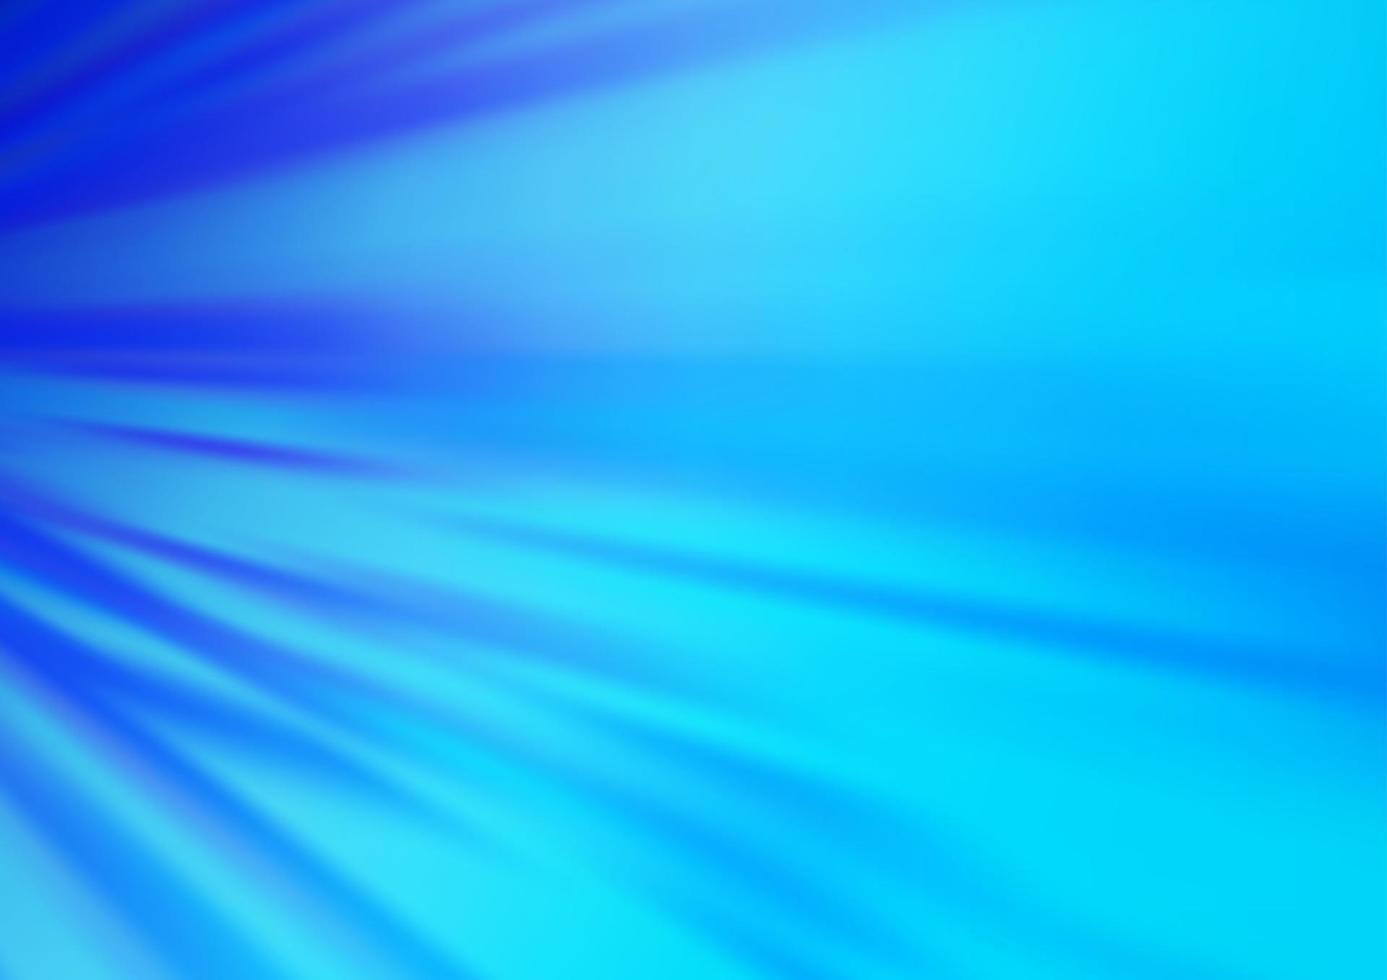 texture vecteur bleu clair avec des lignes colorées.